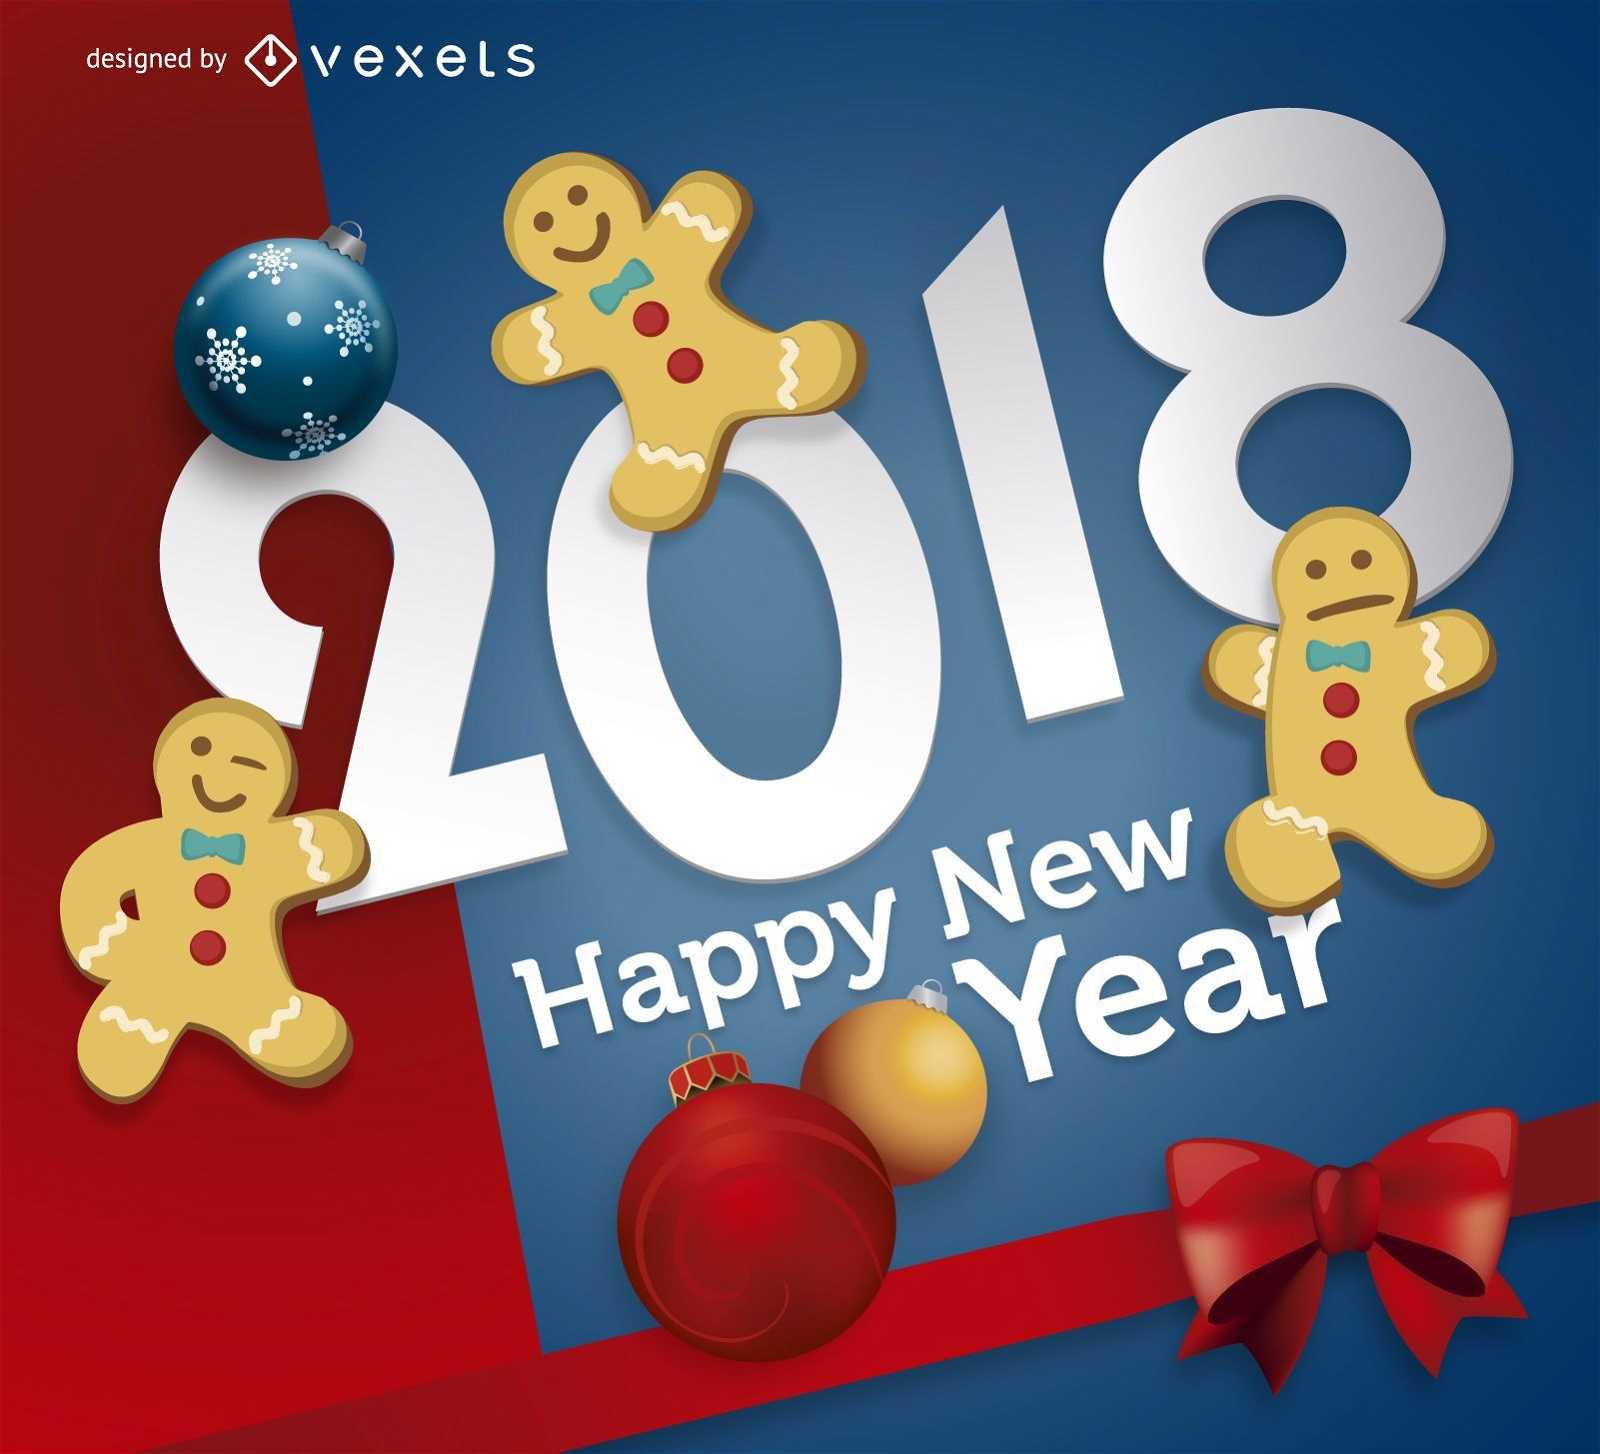 P?ster festivo de ano novo 2018